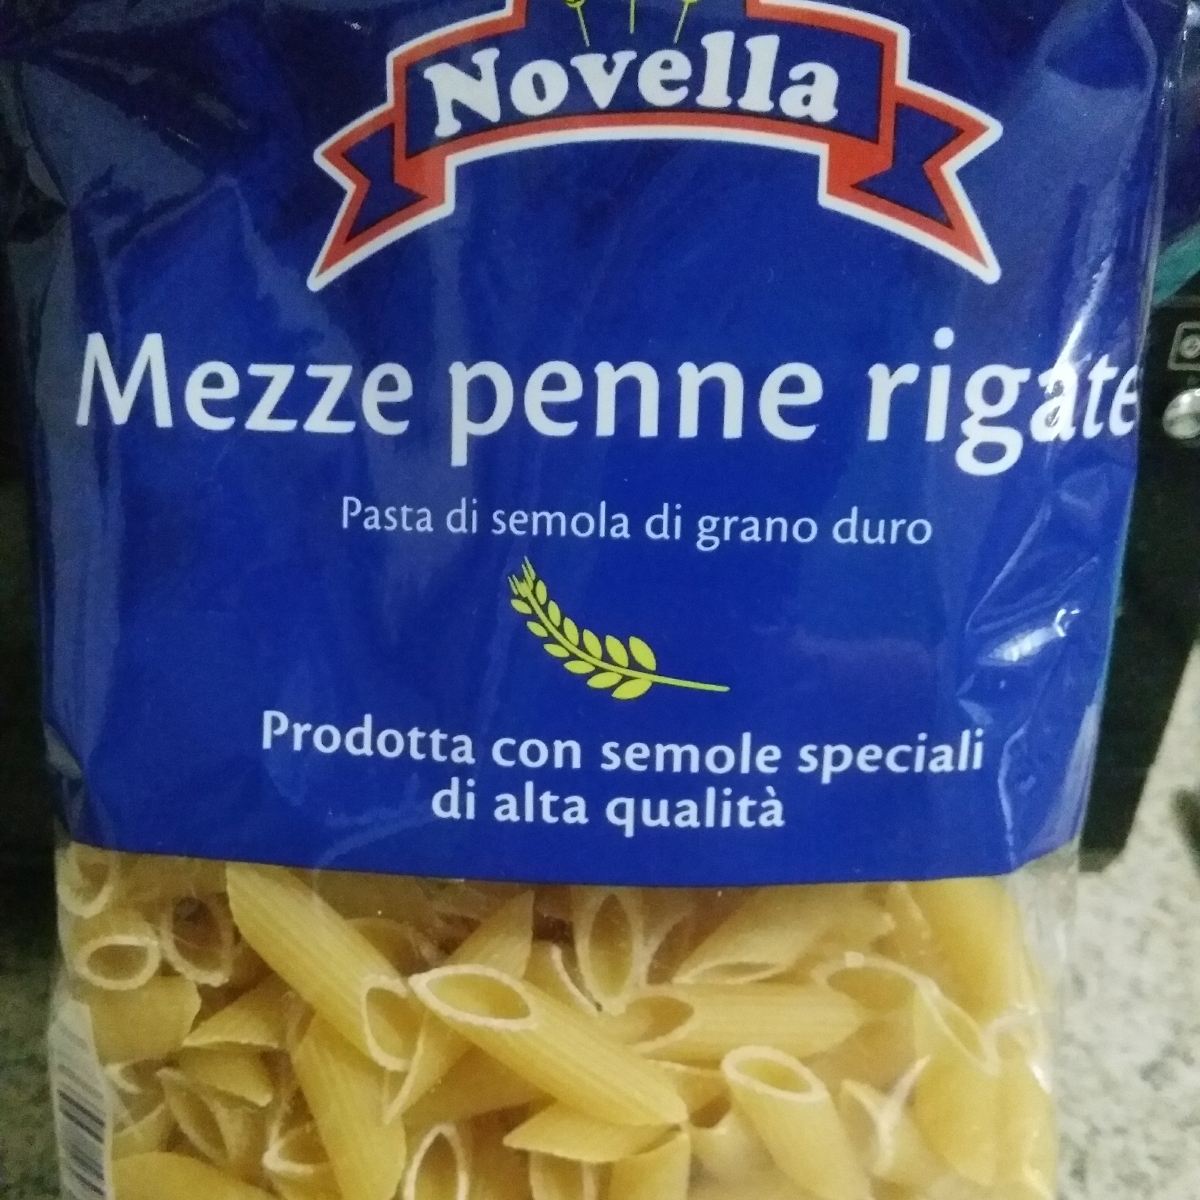 Novella Mezze penne rigate Reviews